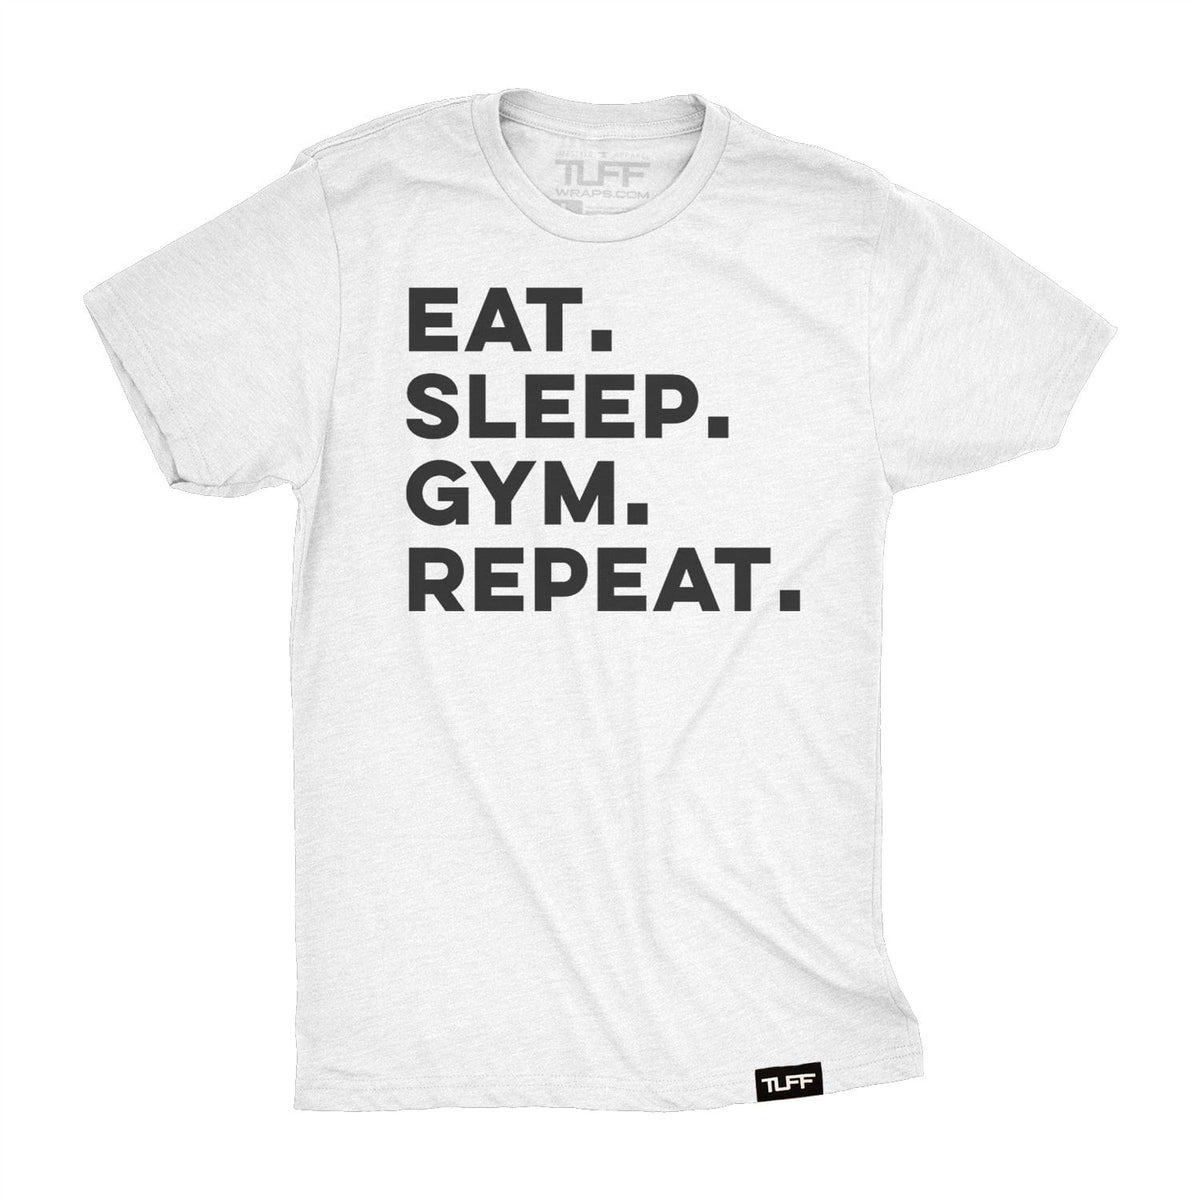 Eat. Sleep. Gym. Repeat. Tee S / White TuffWraps.com